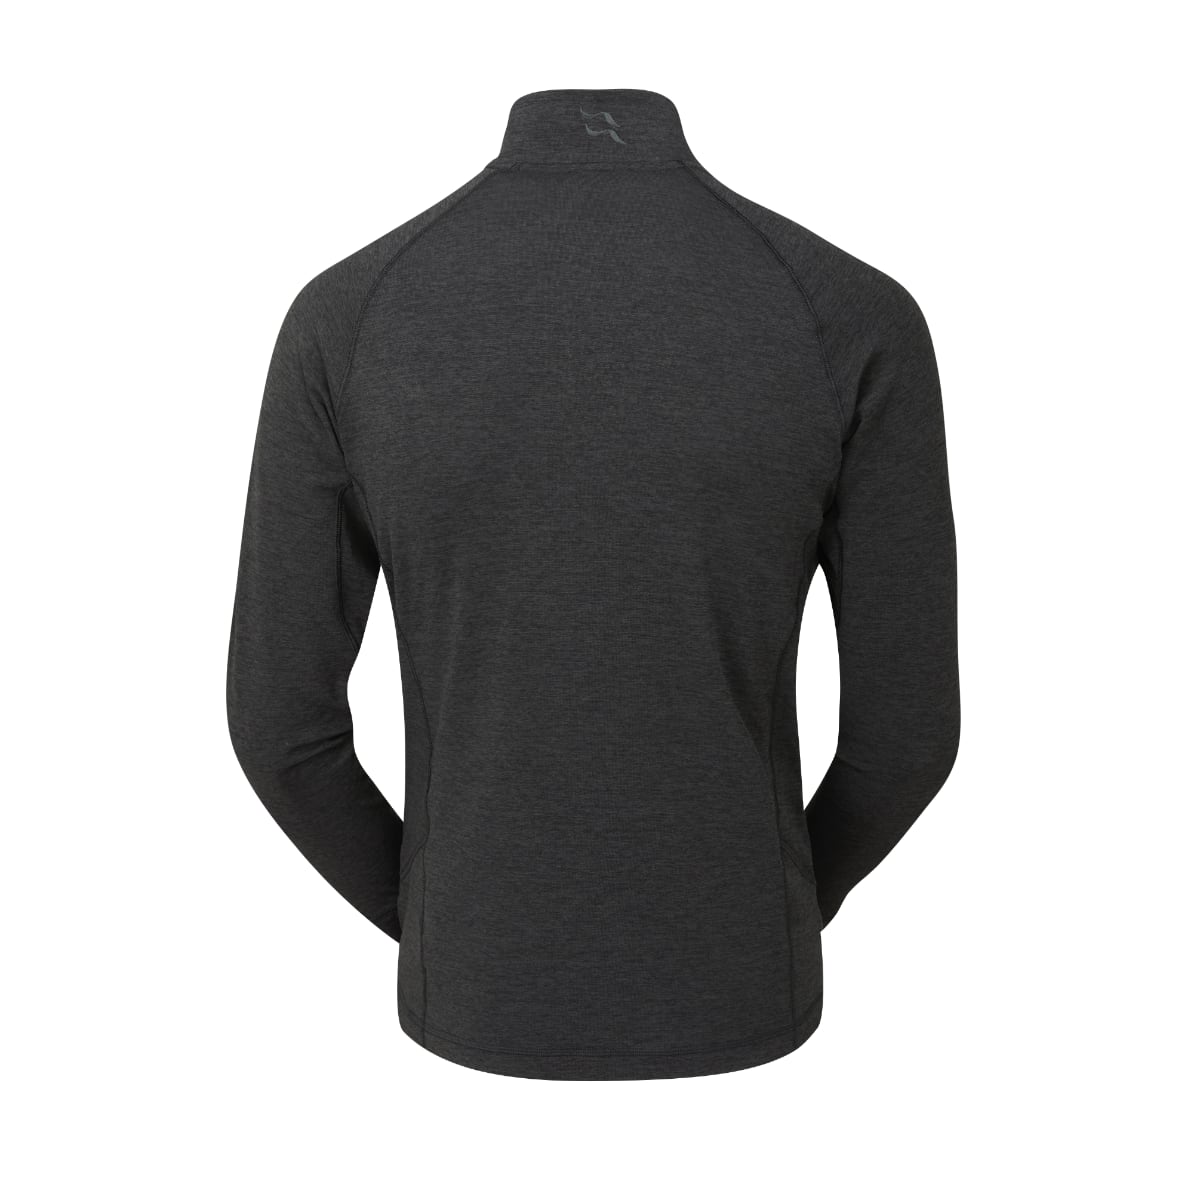 Rab Nexus Pull-On Fleece Men's Top | Black